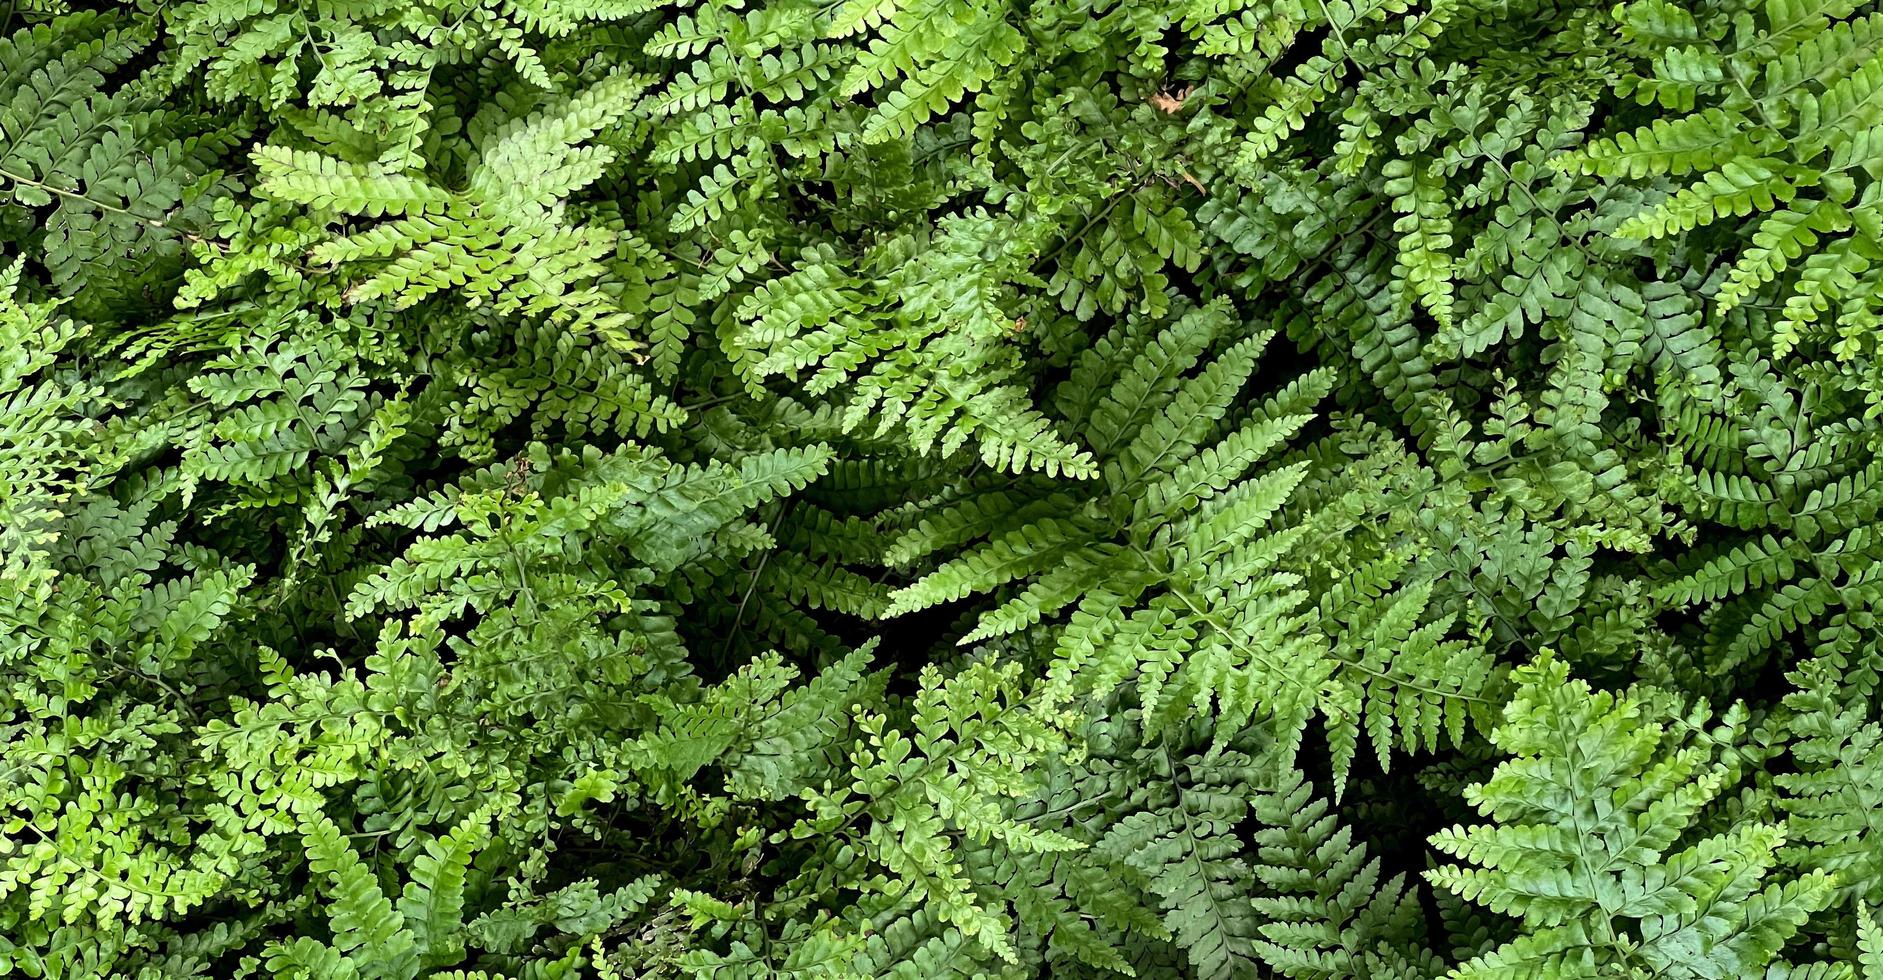 fond de nature verte. feuillage vert foncé plante fraîche, bannière de feuilles vertes naturelles photo